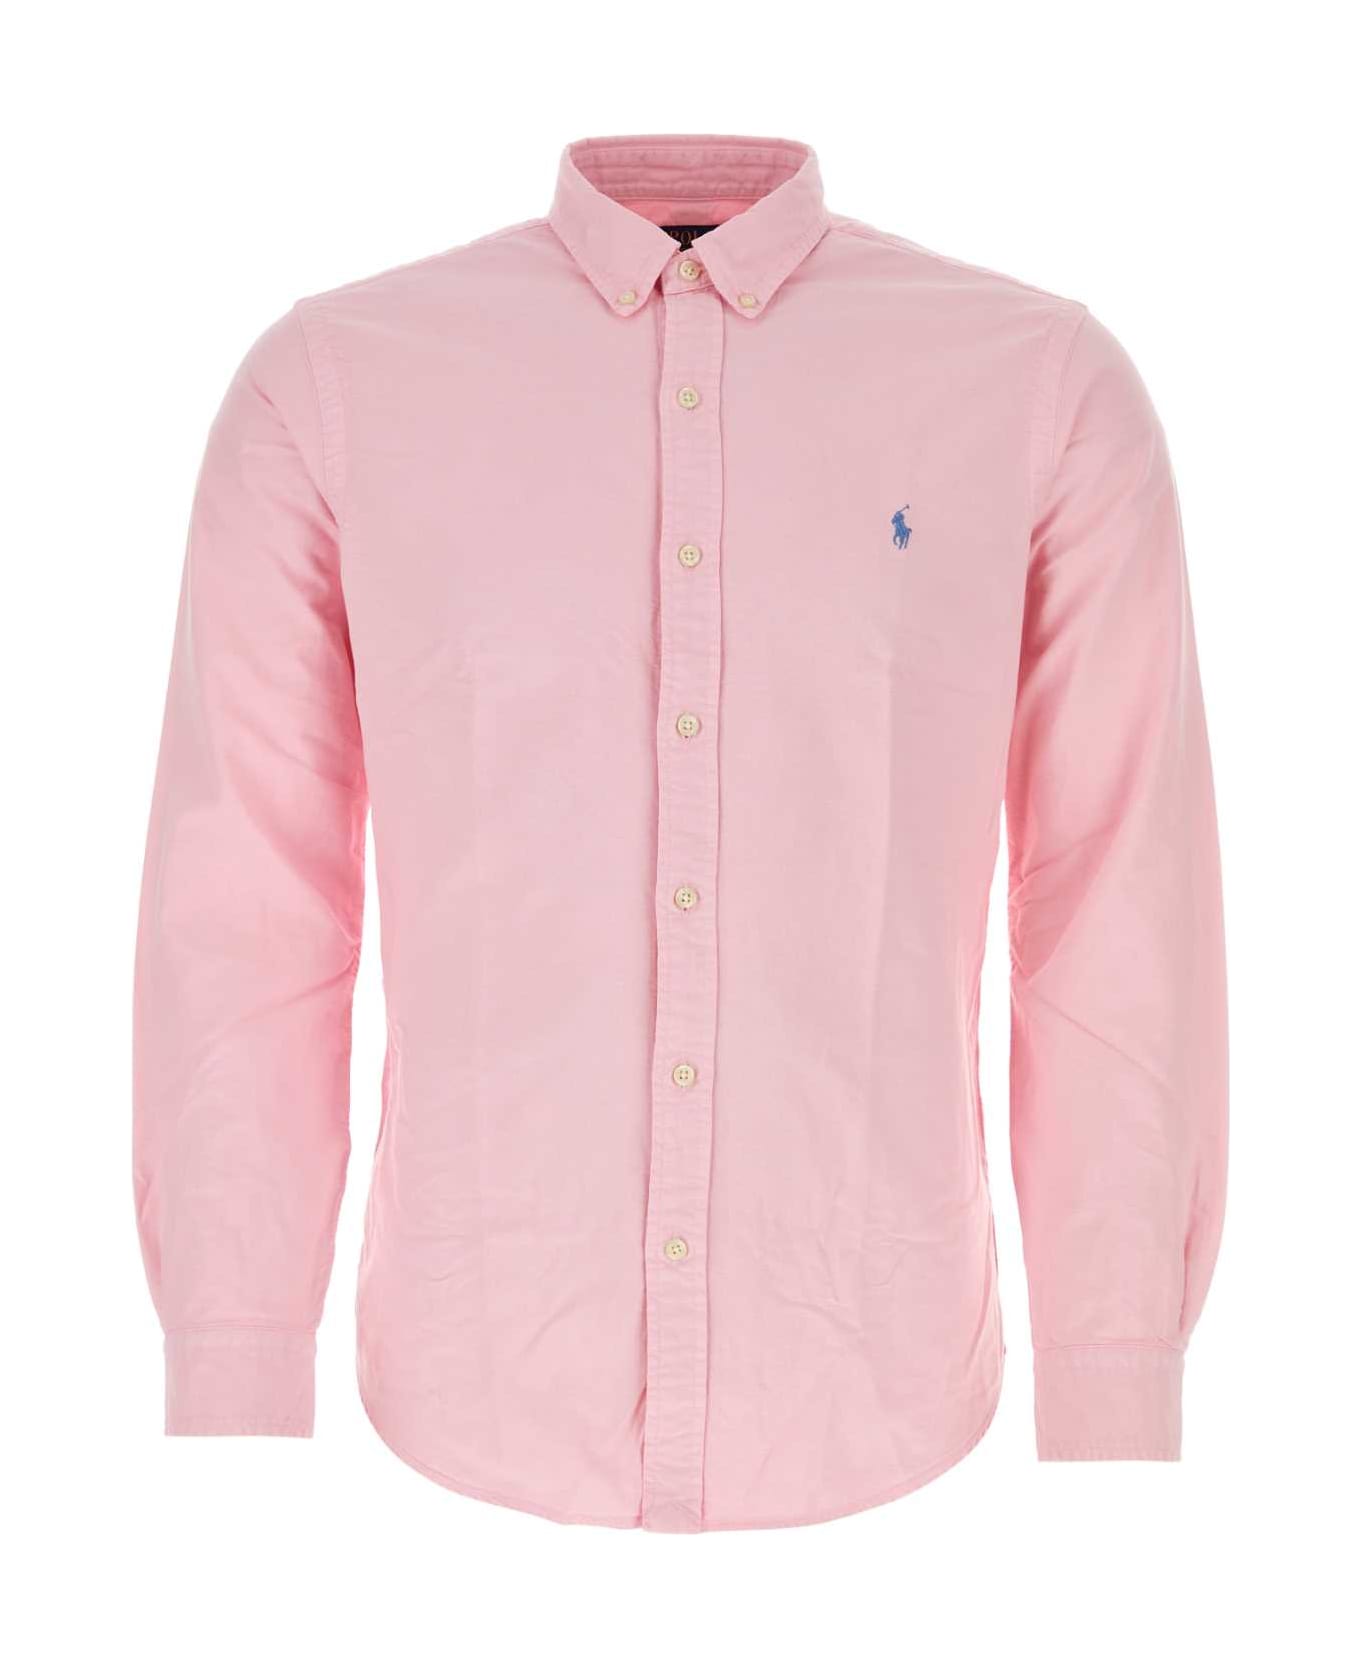 Polo Ralph Lauren Pink Oxford Shirt - PINK